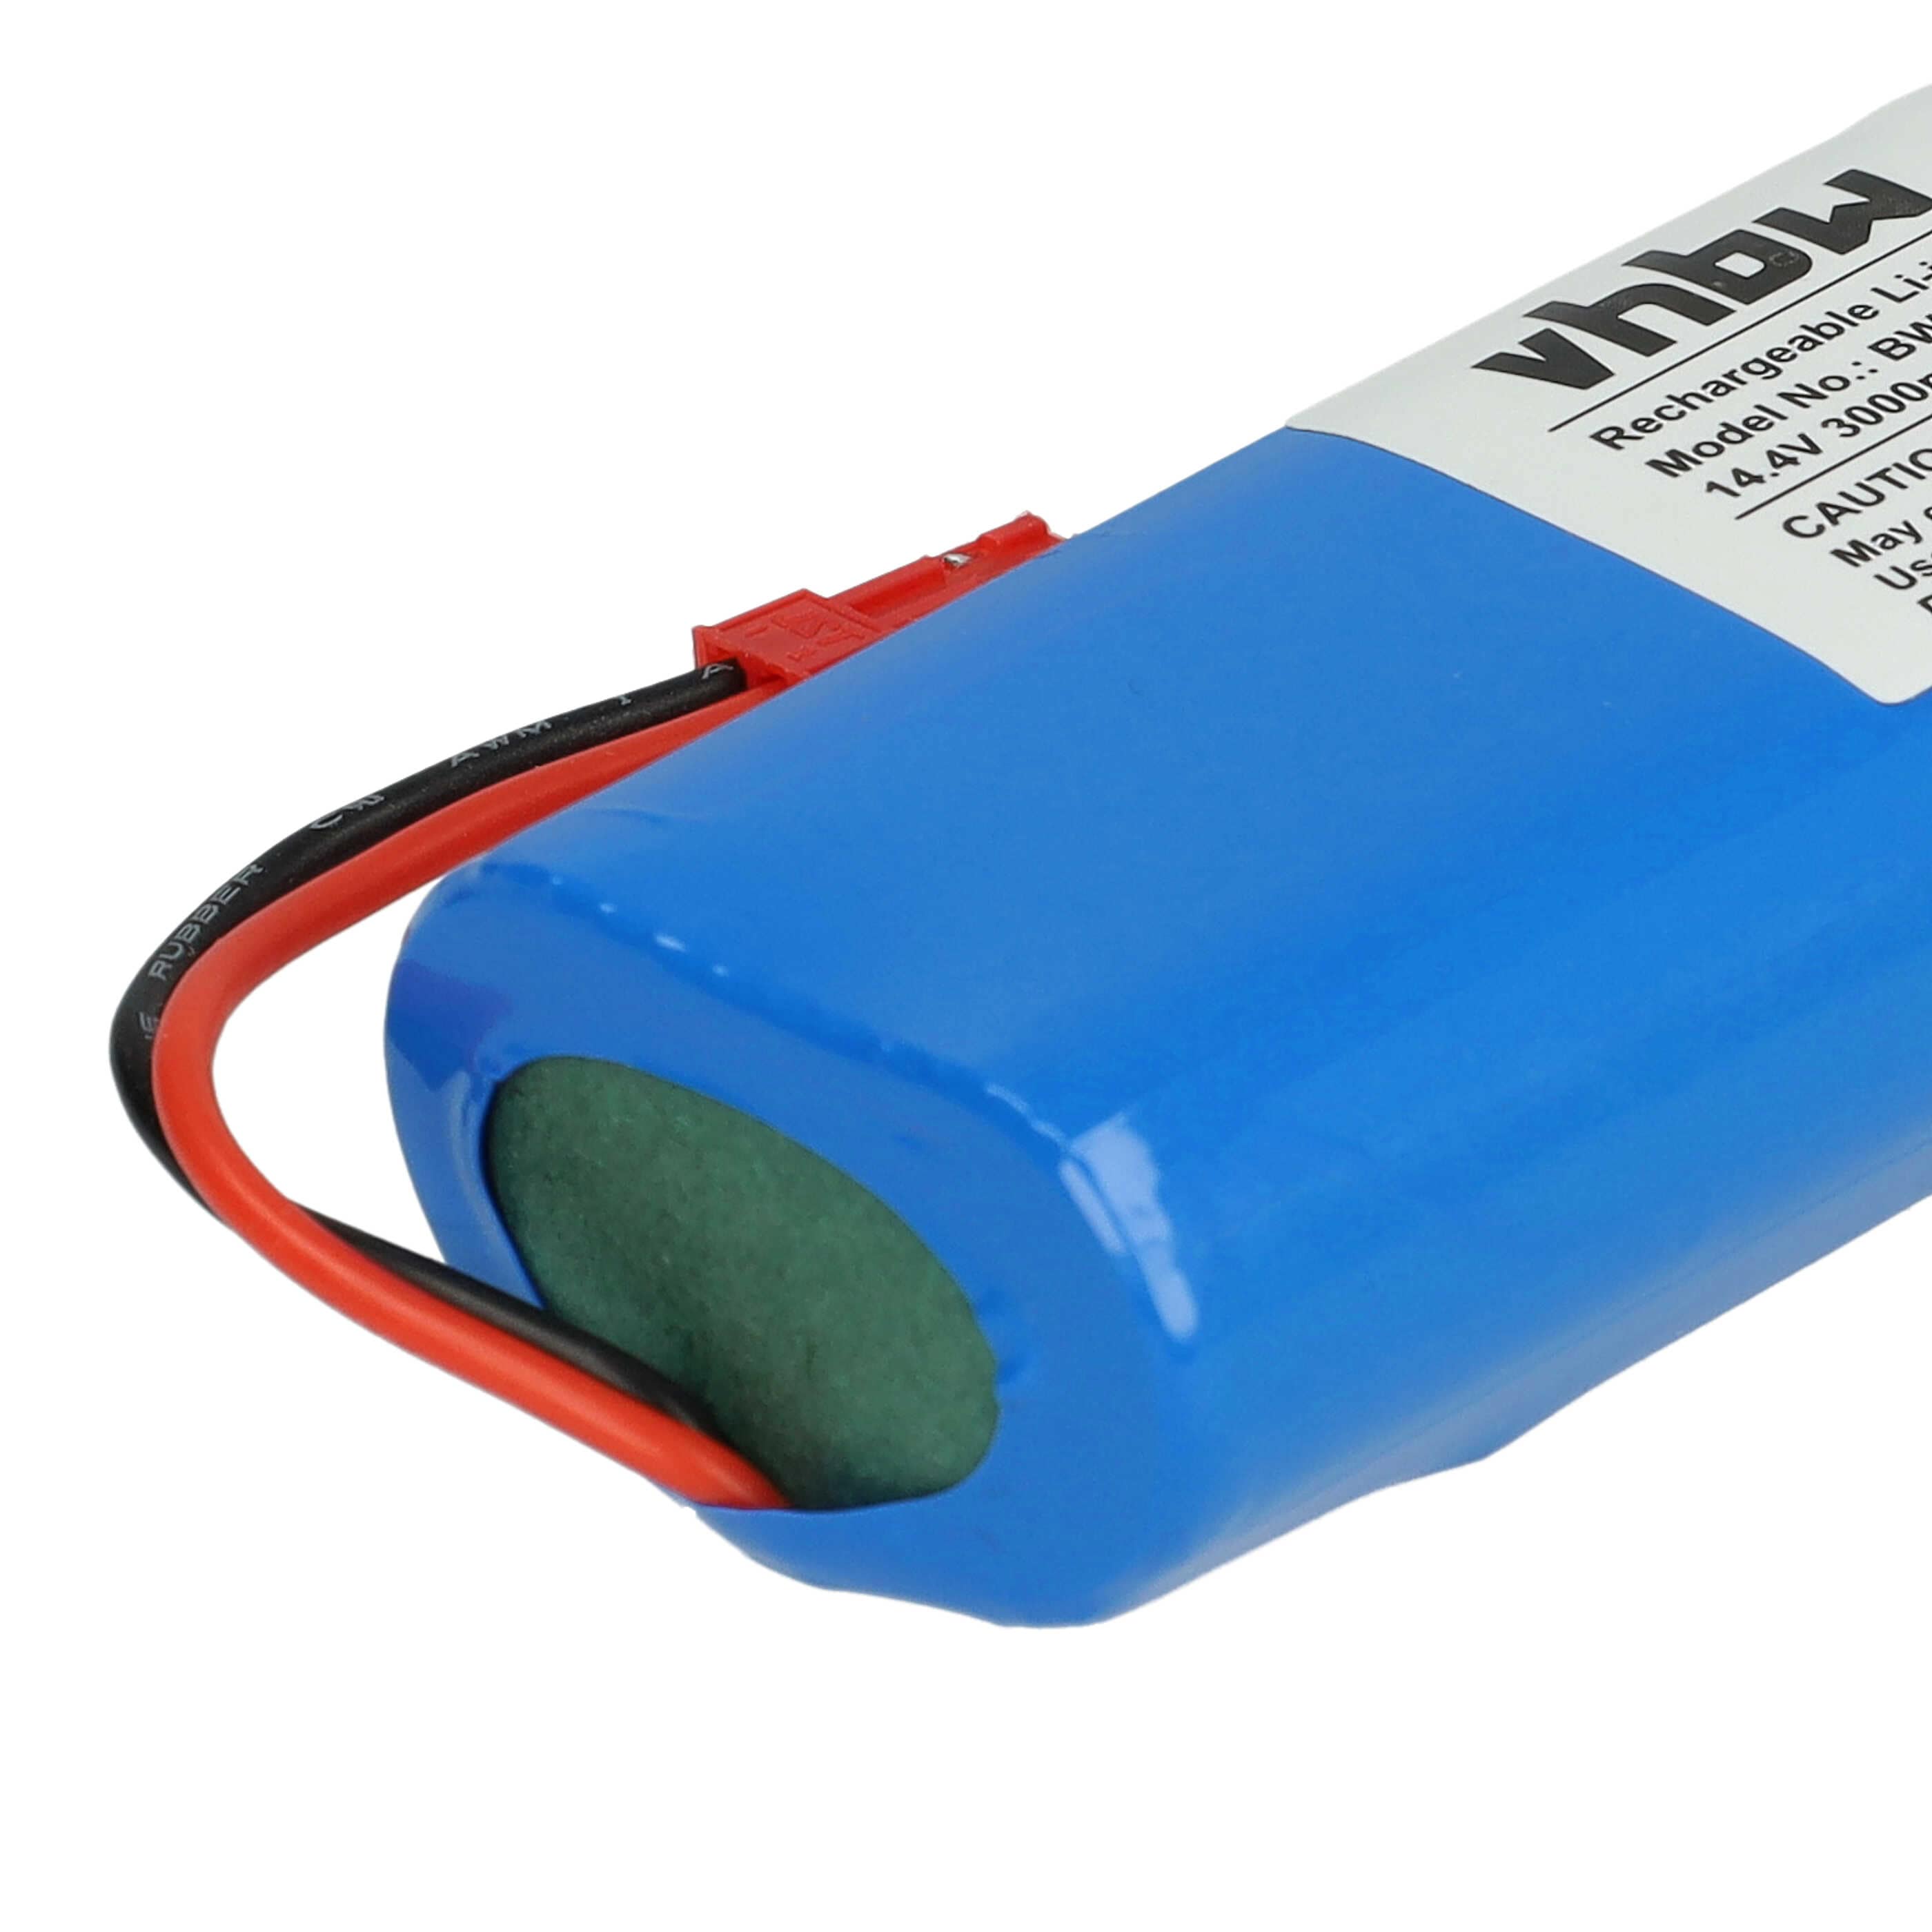 Batterie remplace iLife Ay-18650B4, 18650B4-4S1P-AGX-2 pour robot aspirateur - 3000mAh 14,4V Li-ion